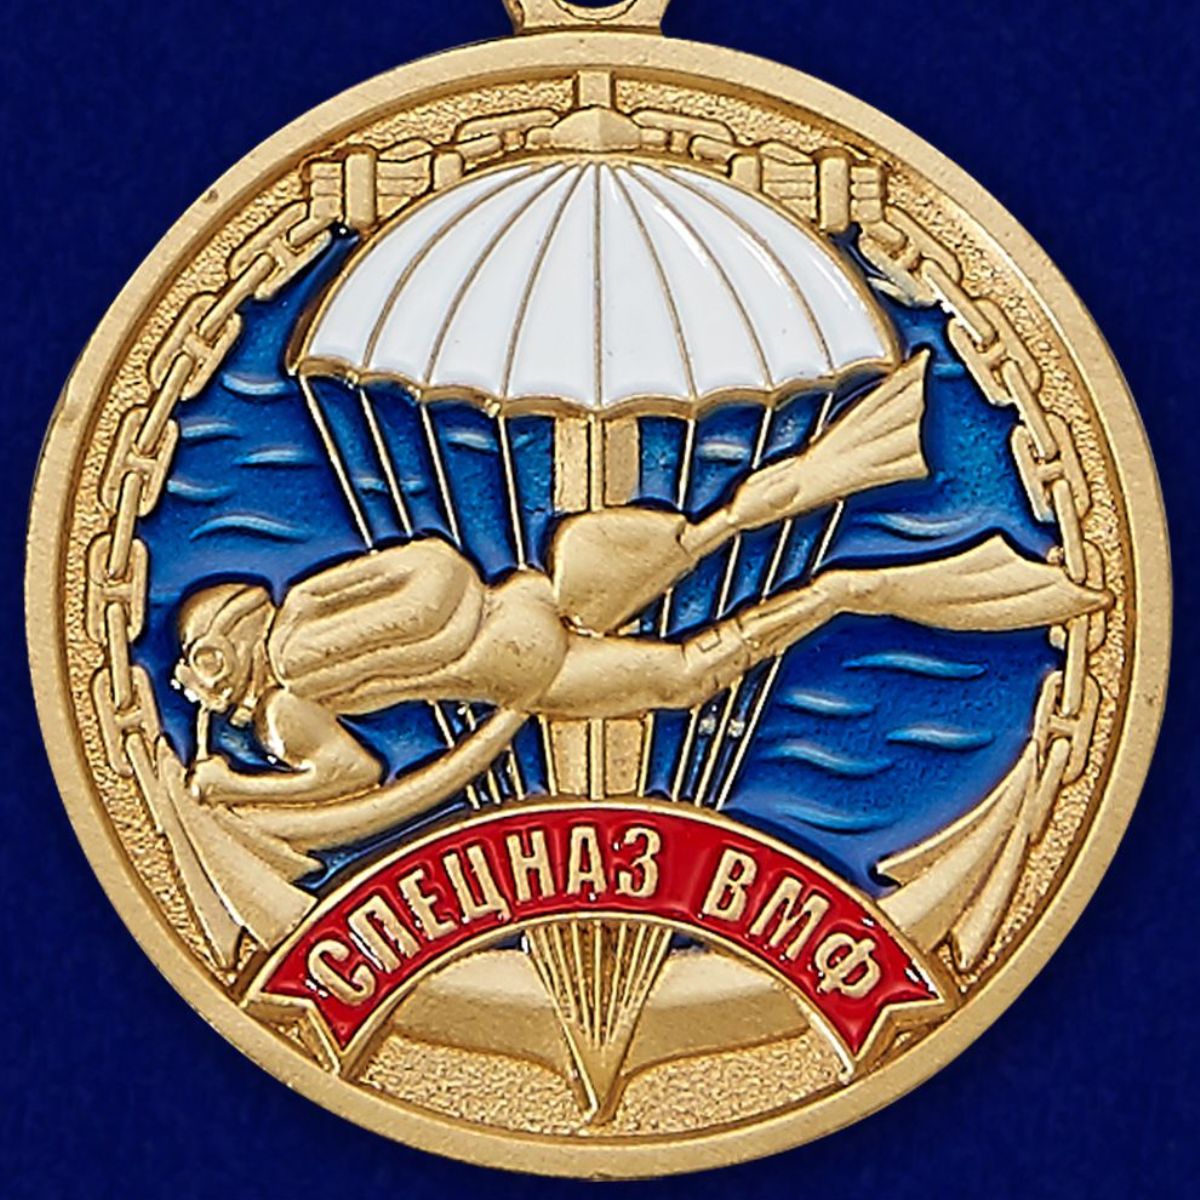 Медаль "Ветеран" Спецназа ВМФ 